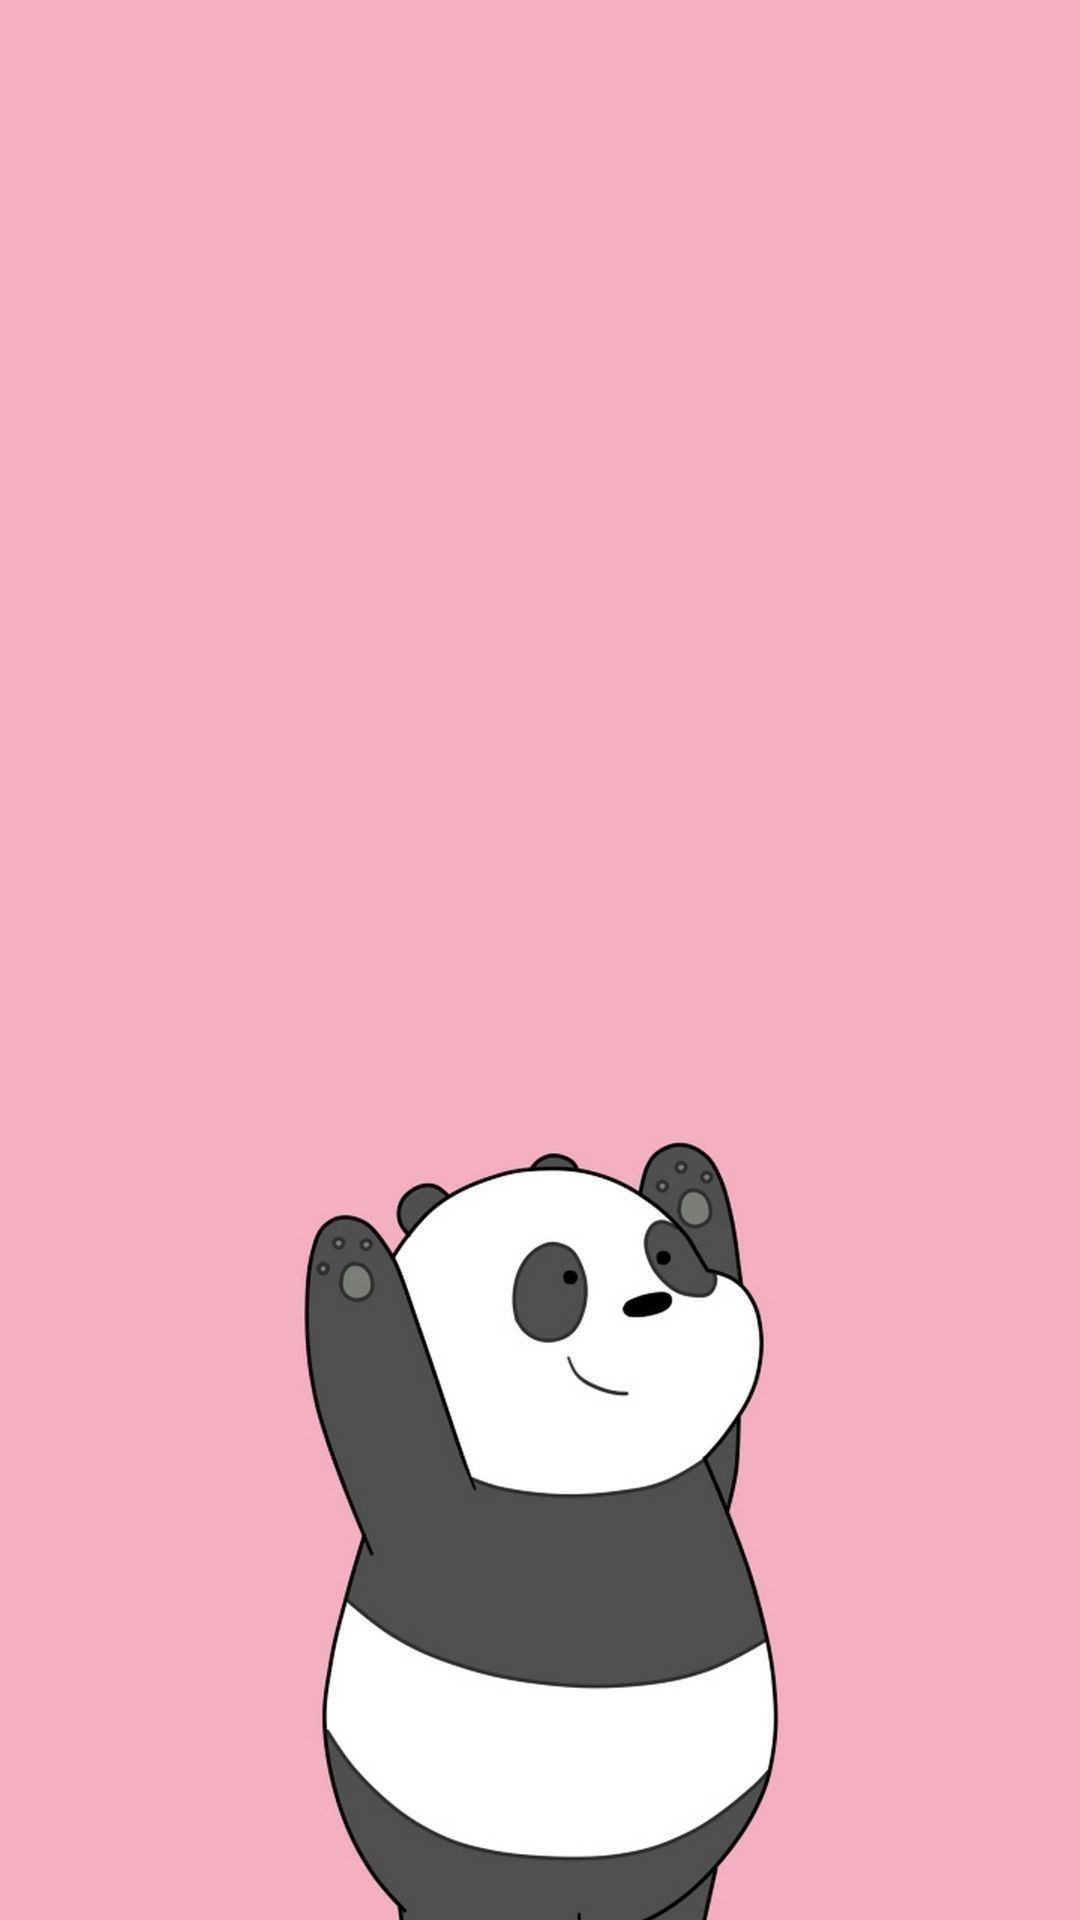 Cute Panda Wallpaper For Android - Panda We Bare Bears Pink - HD Wallpaper 